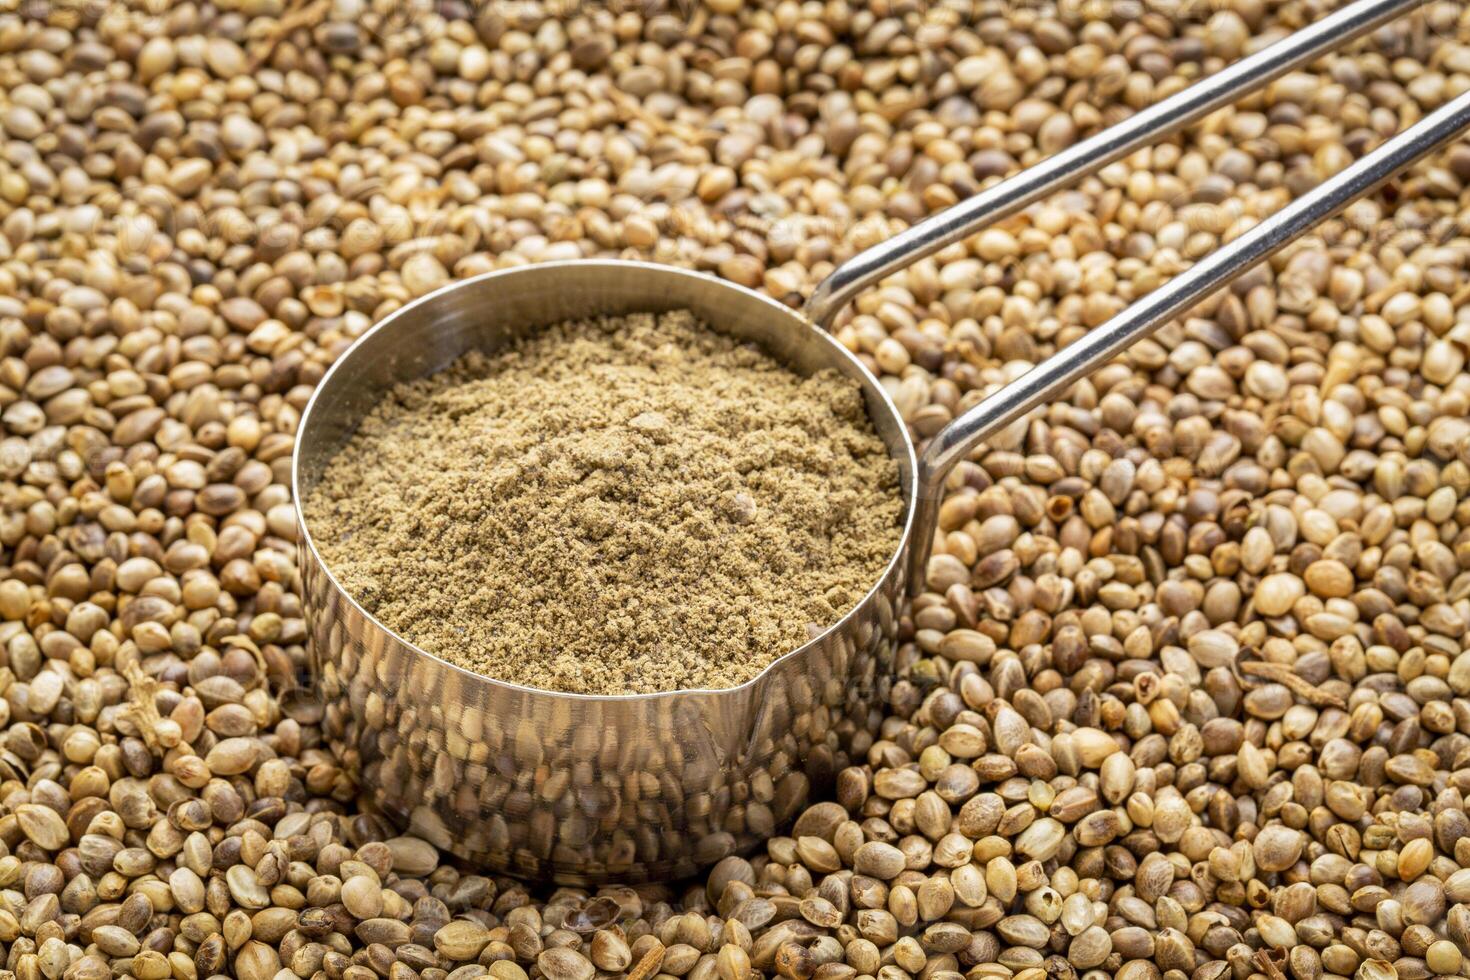 hemp protein powder in a metal measuring scoop against dry hemp seed background photo